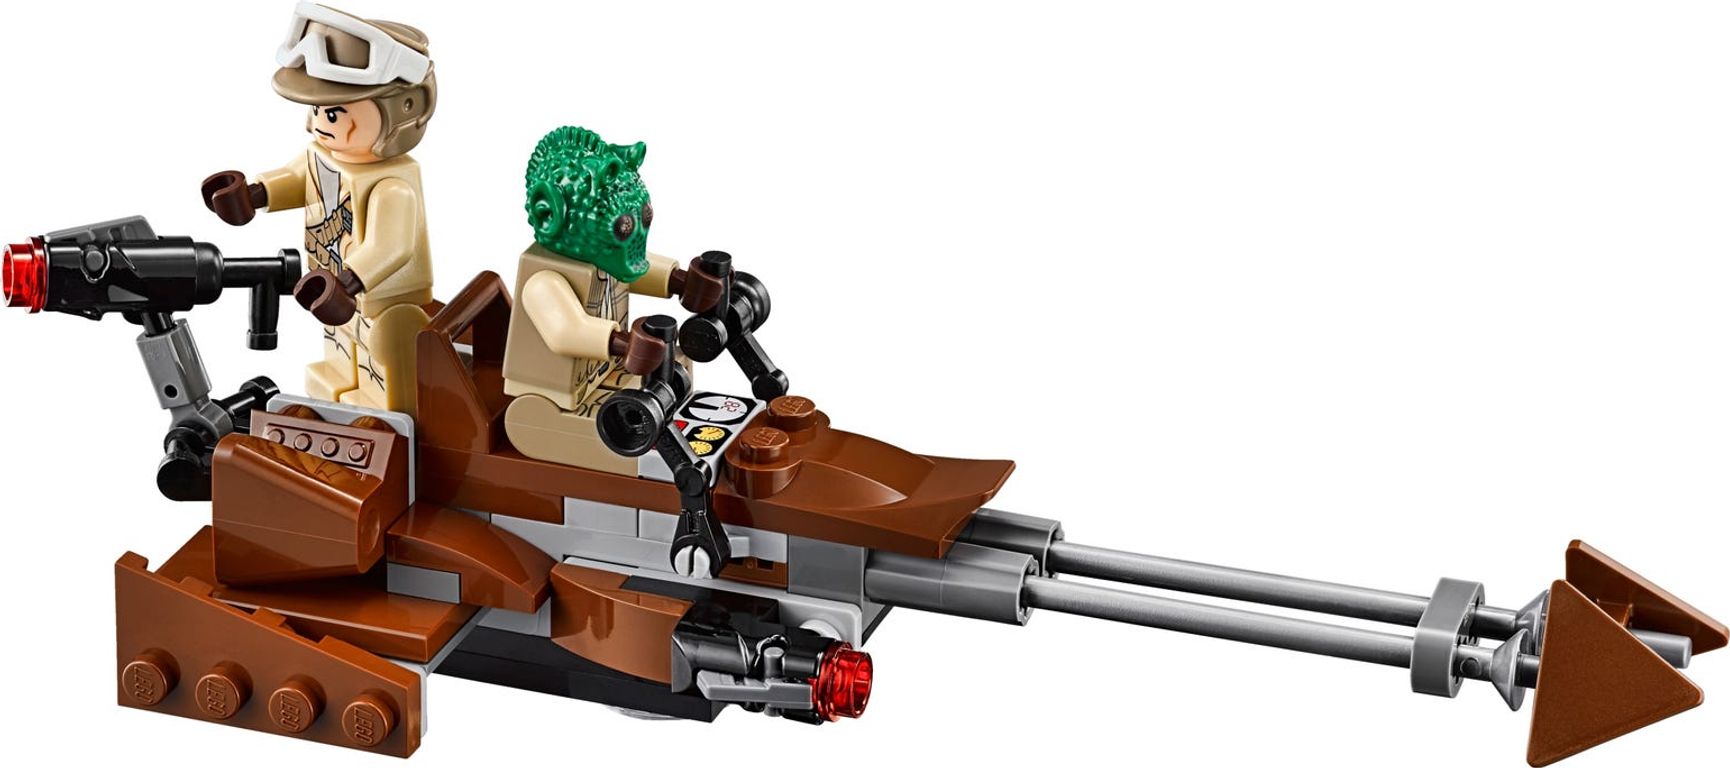 LEGO® Star Wars Rebels Battle Pack components